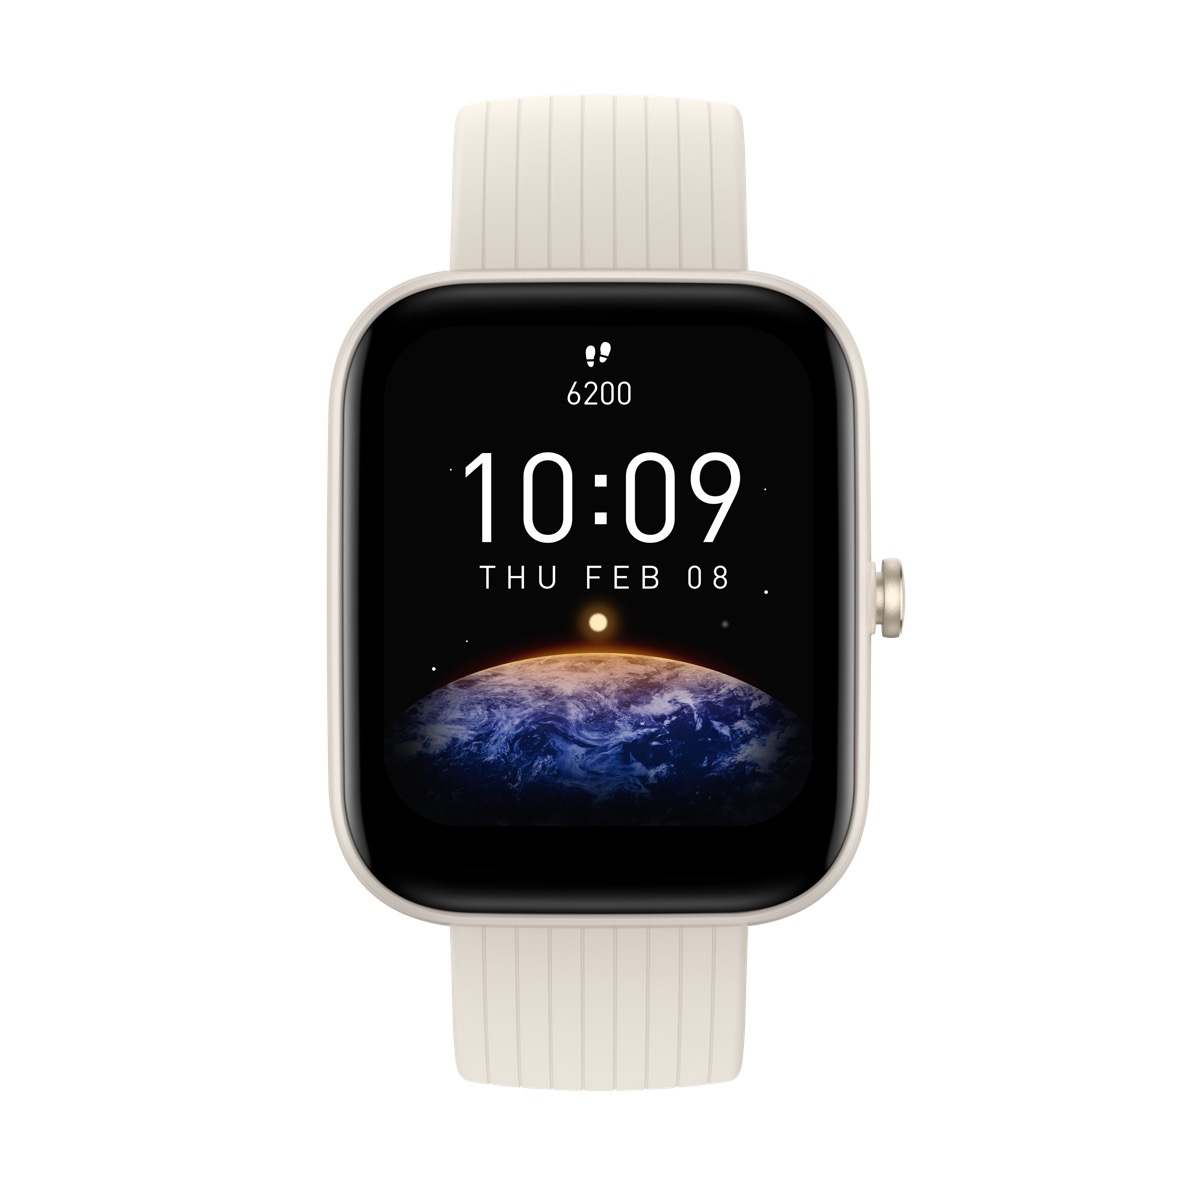 Amazfit annuncia gli smartwatch Bip 3 e Bip 3 Pro